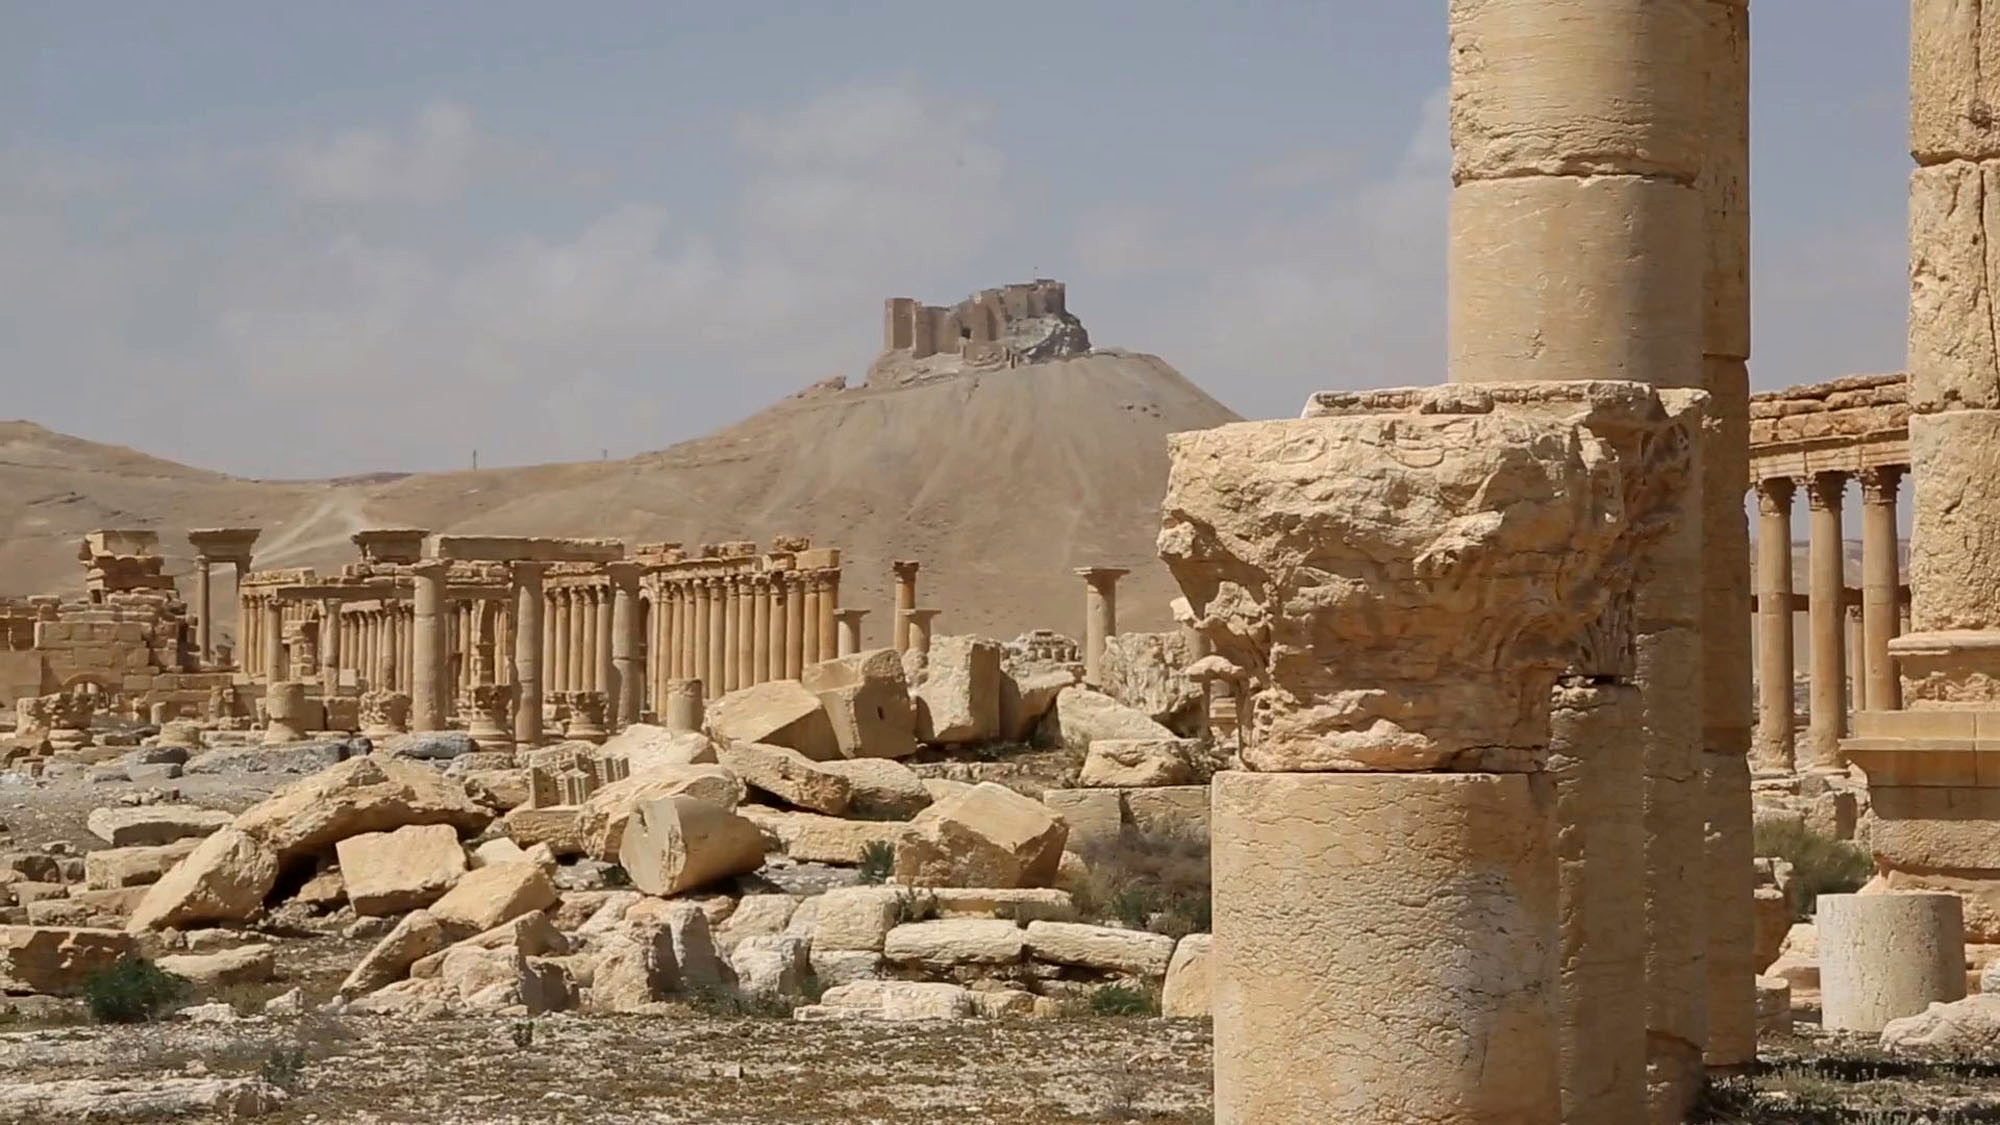 El ejército sirio realizó el descubrimiento en la ciudad de Palmira, ciudad conquistada por el EI en mayo de 2015